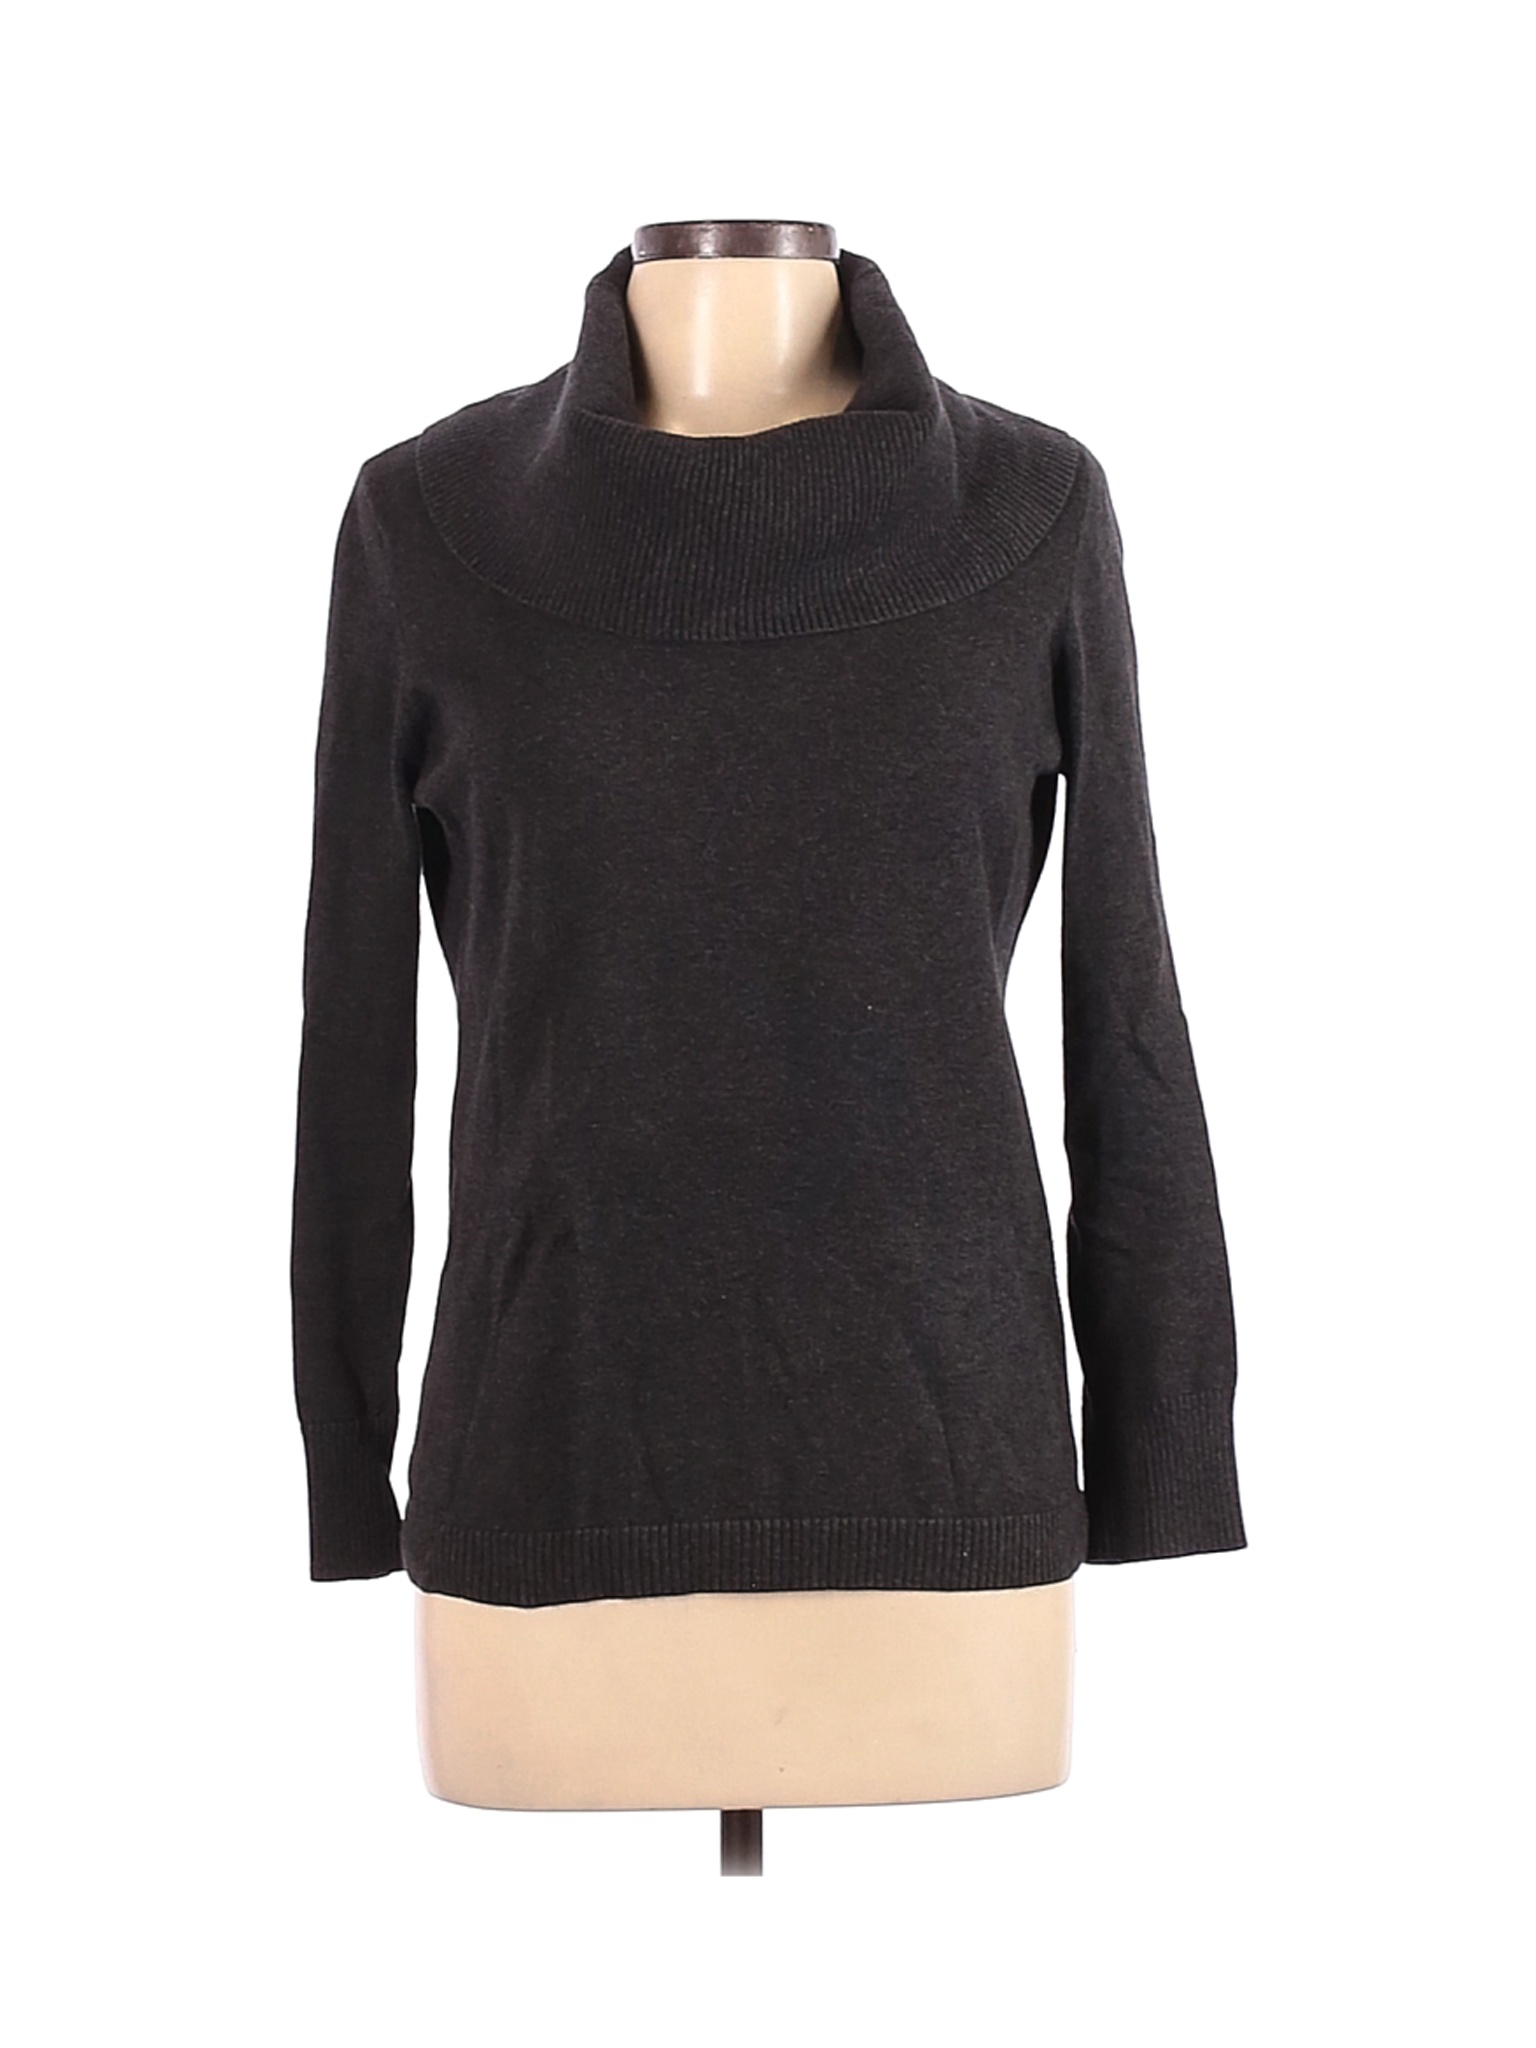 Ann Taylor LOFT Outlet Women Gray Turtleneck Sweater L | eBay